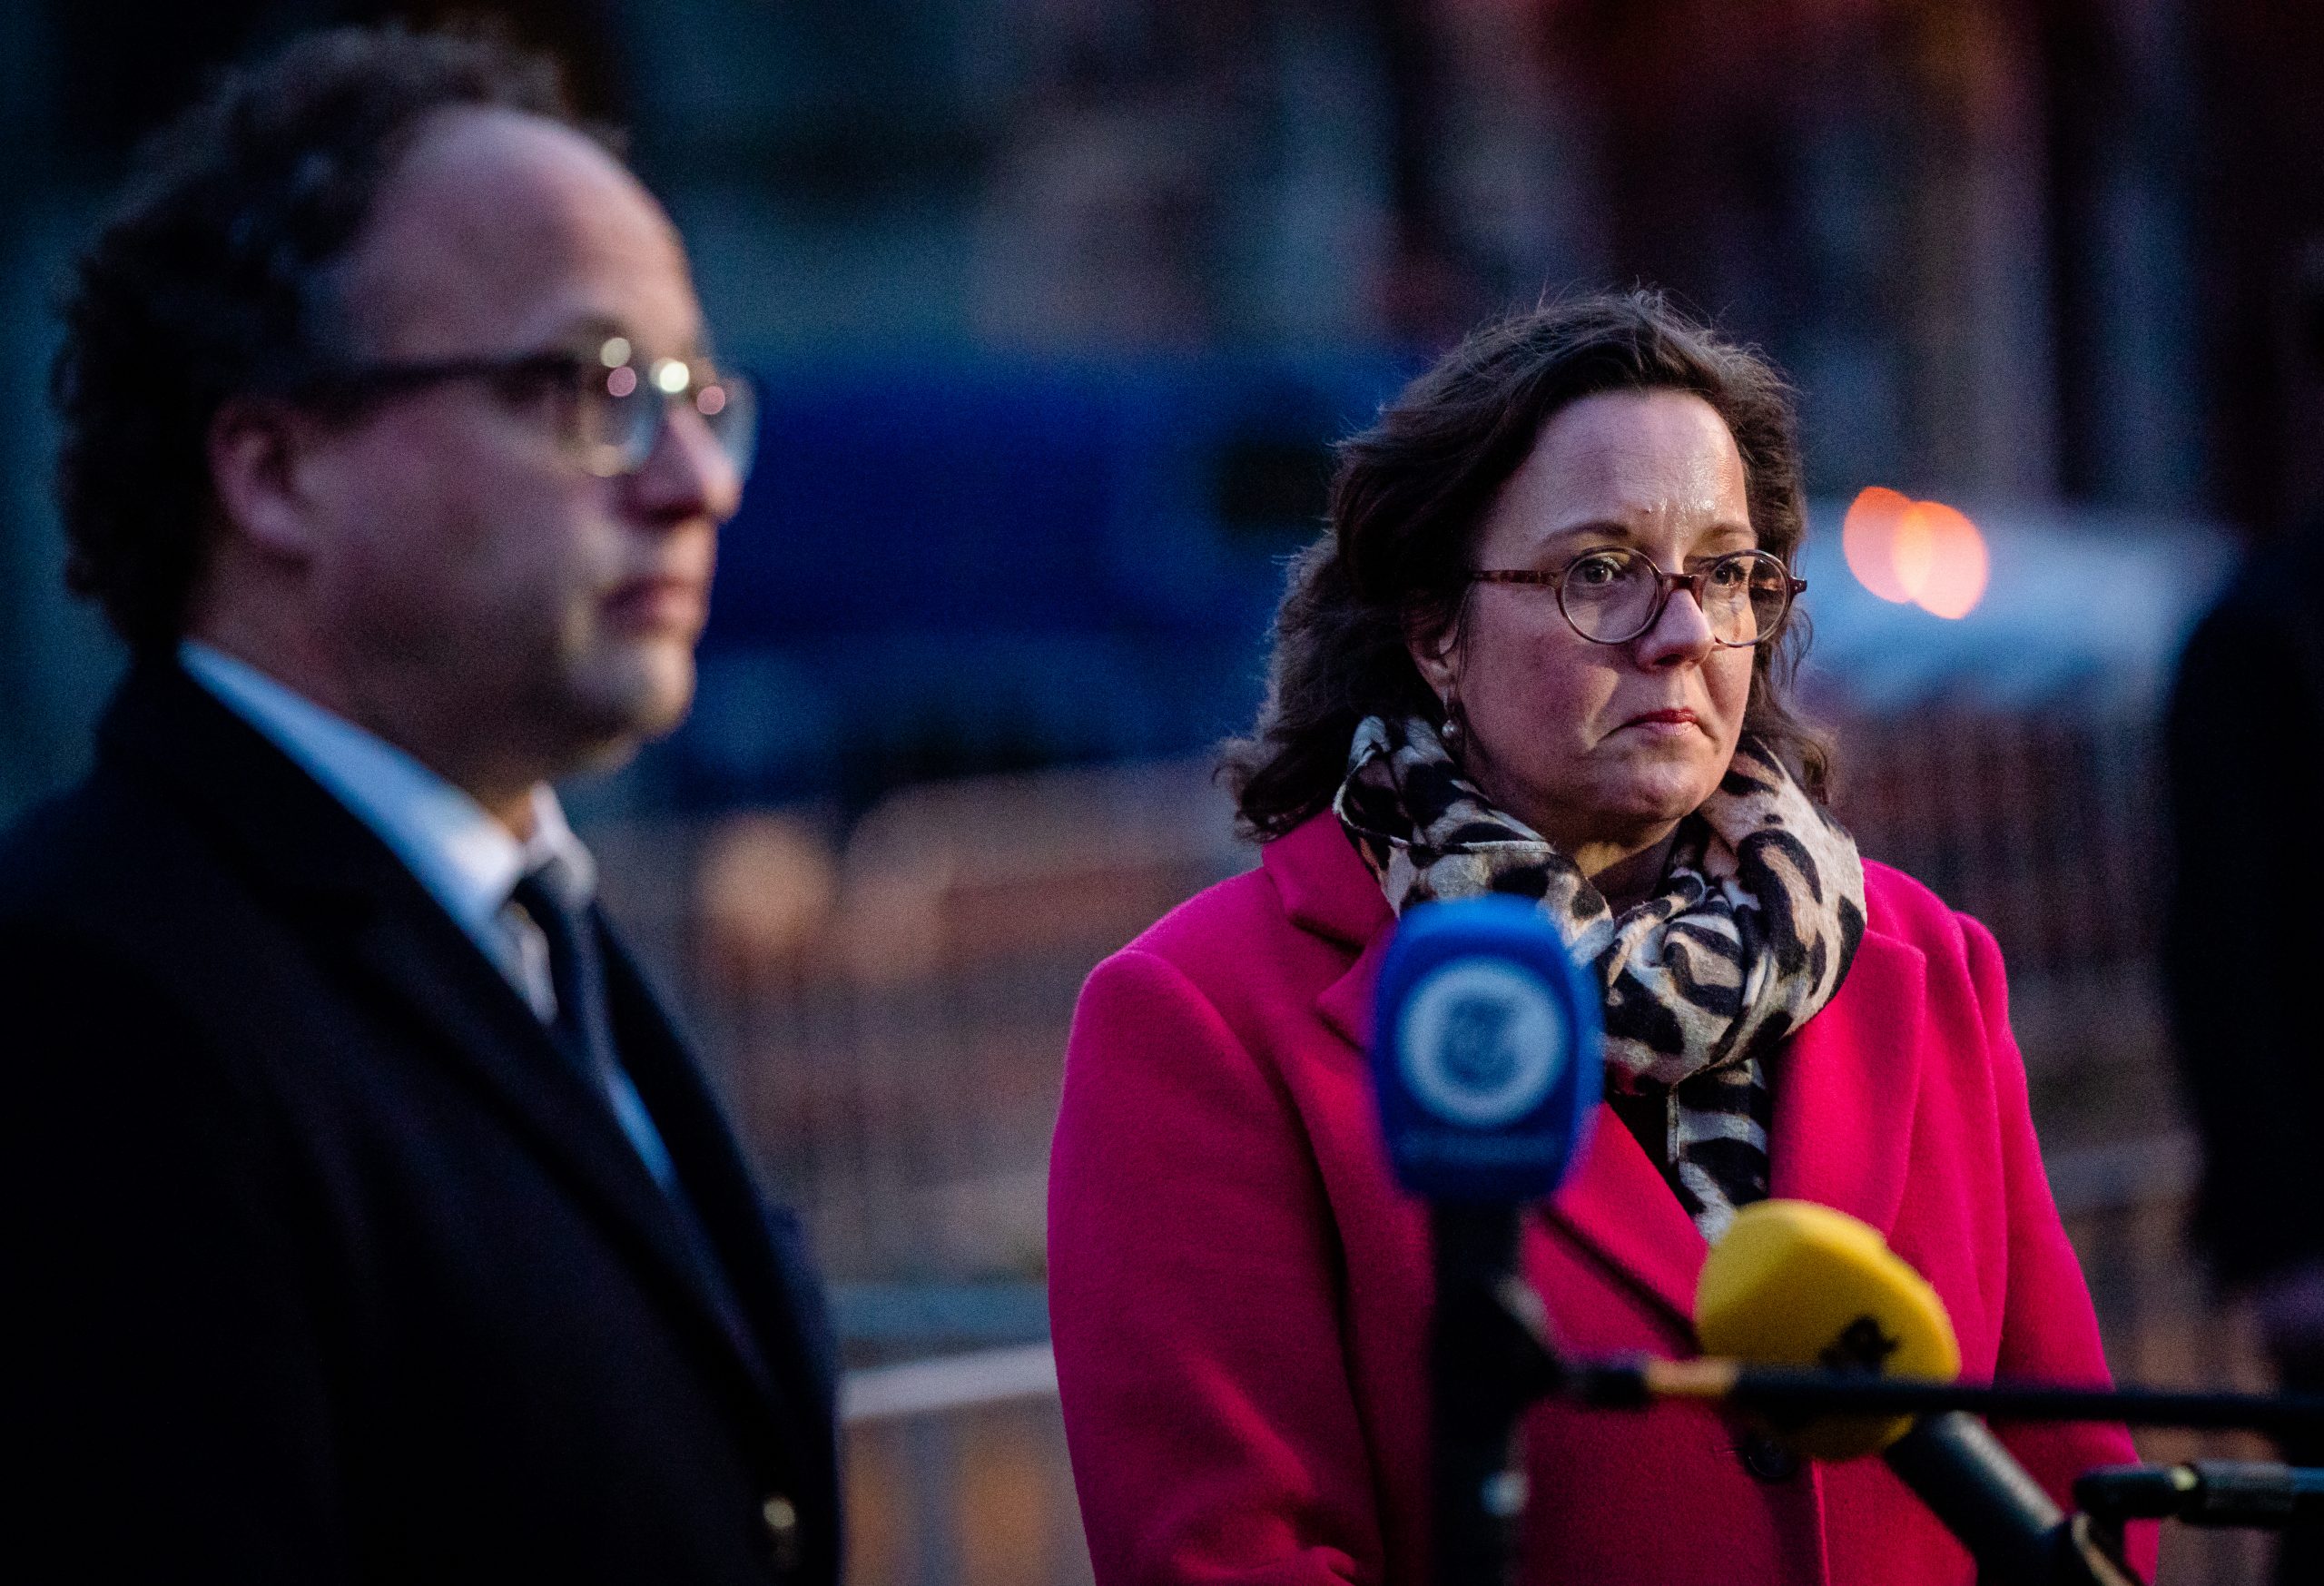 De nieuwe verkenners, demissionair ministers Tamara van Ark (VVD) en Wouter Koolmees (D66), staan de pers te woord.